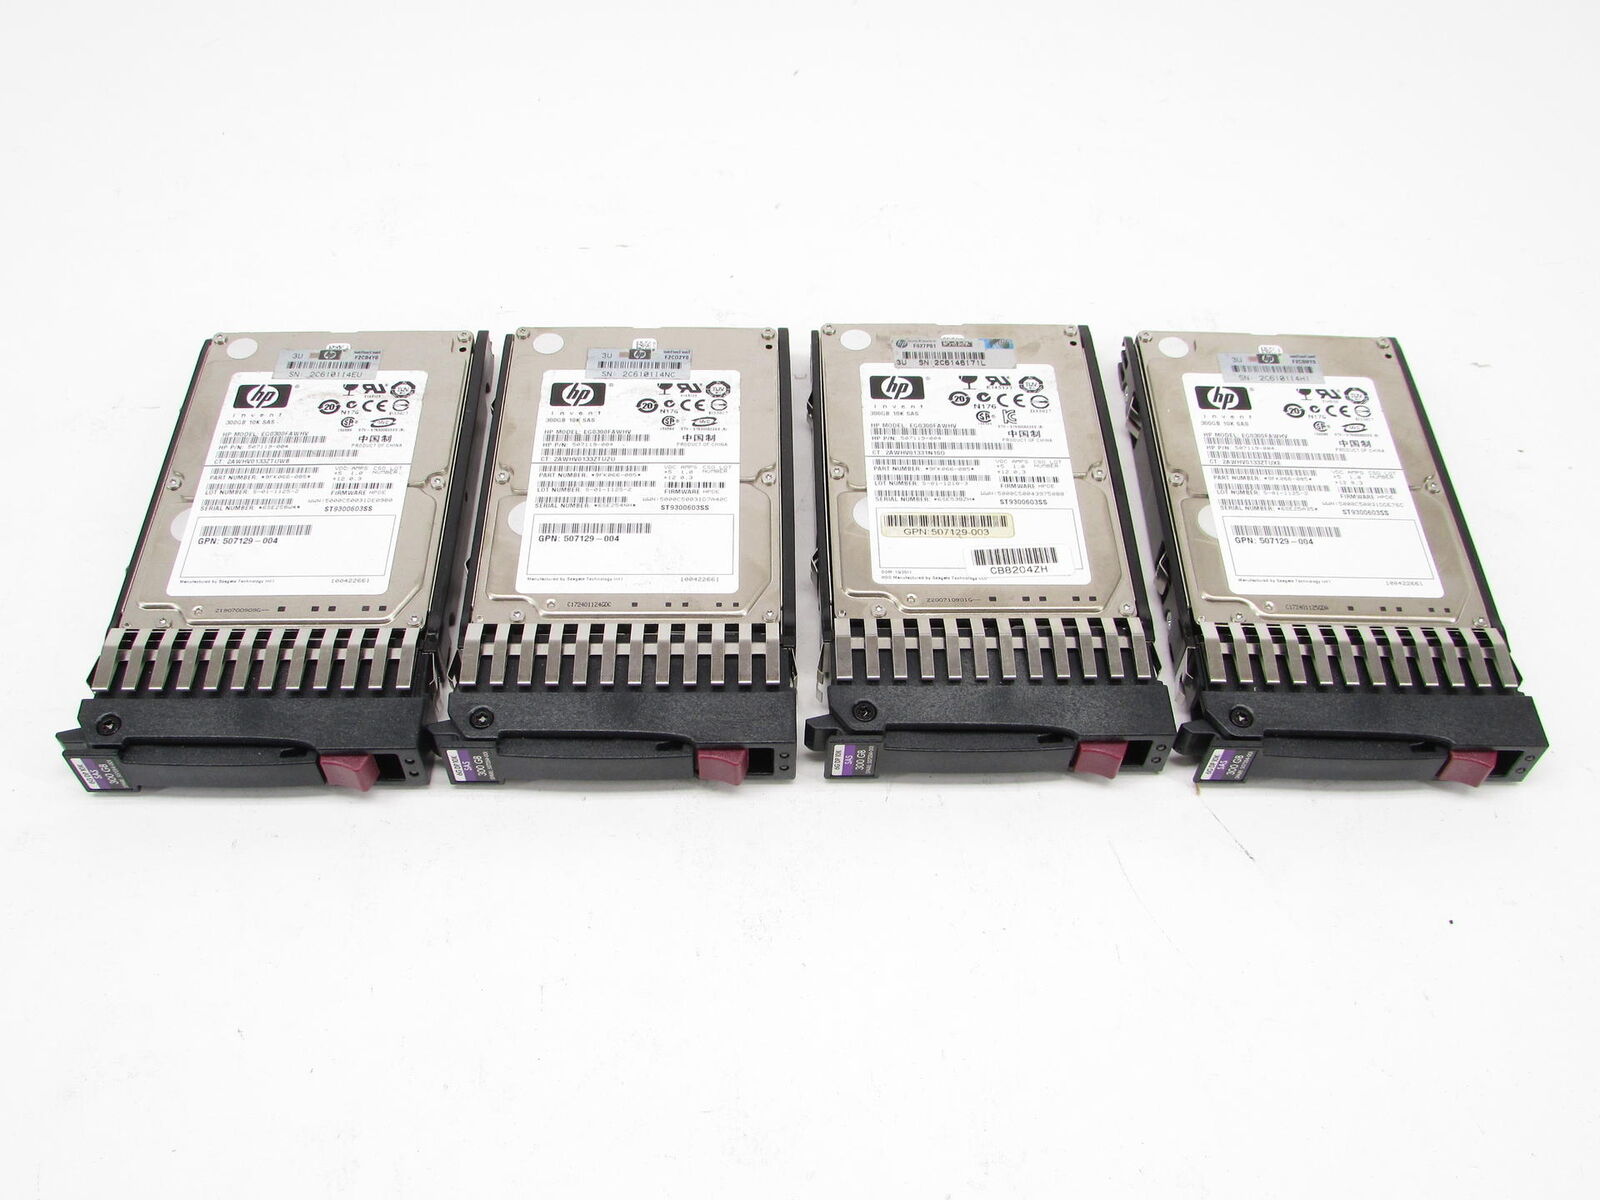 4x HP 507129-004 300GB 10k 16MB SAS 6Gb/s 2.5 HDD Hard Drive Lot of 4